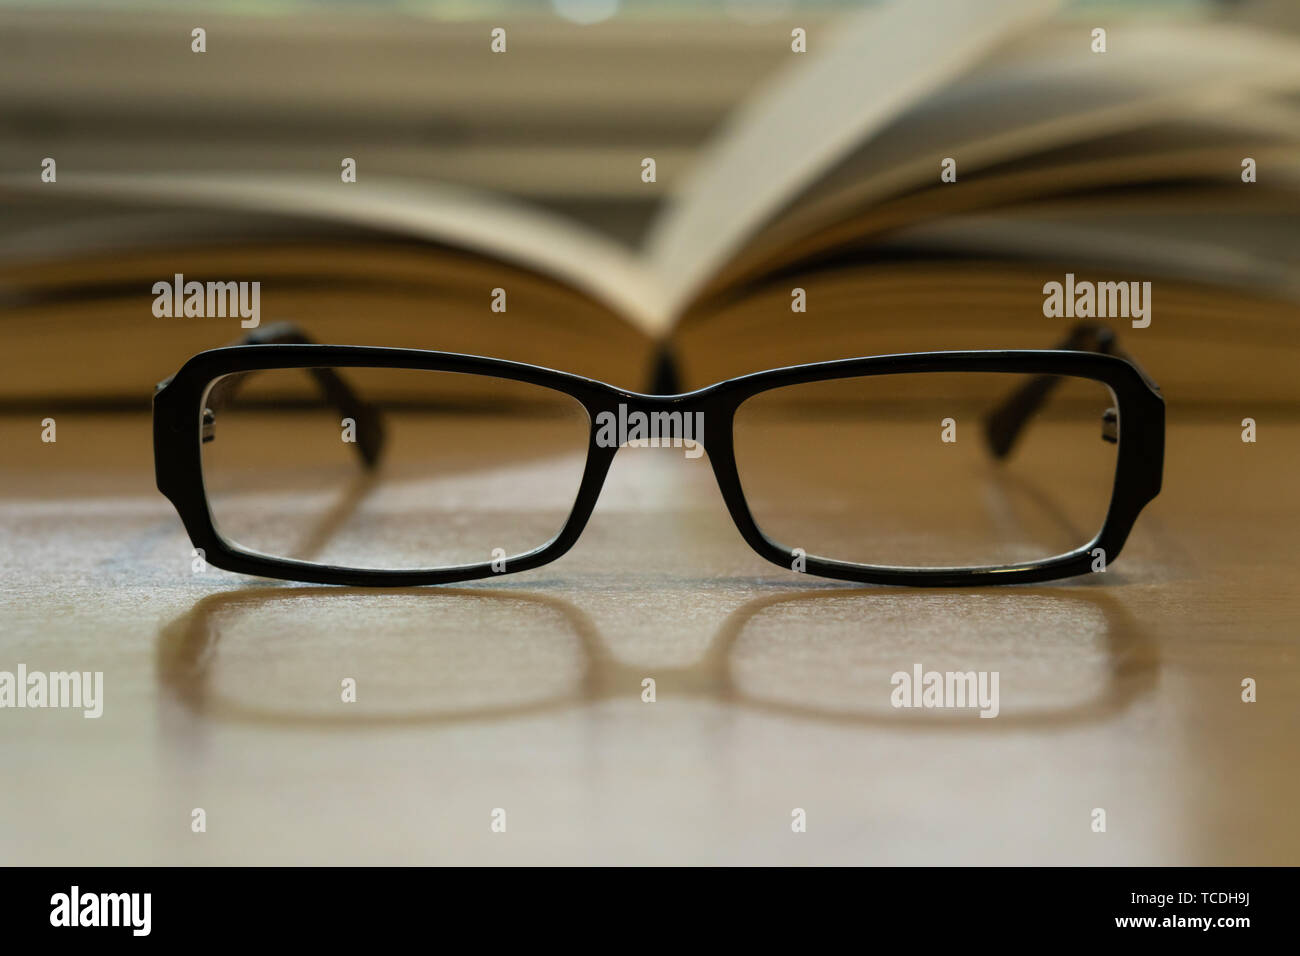 Foto de anteojos y libro abierto detrás de ellos, el concepto de lectura Foto de stock